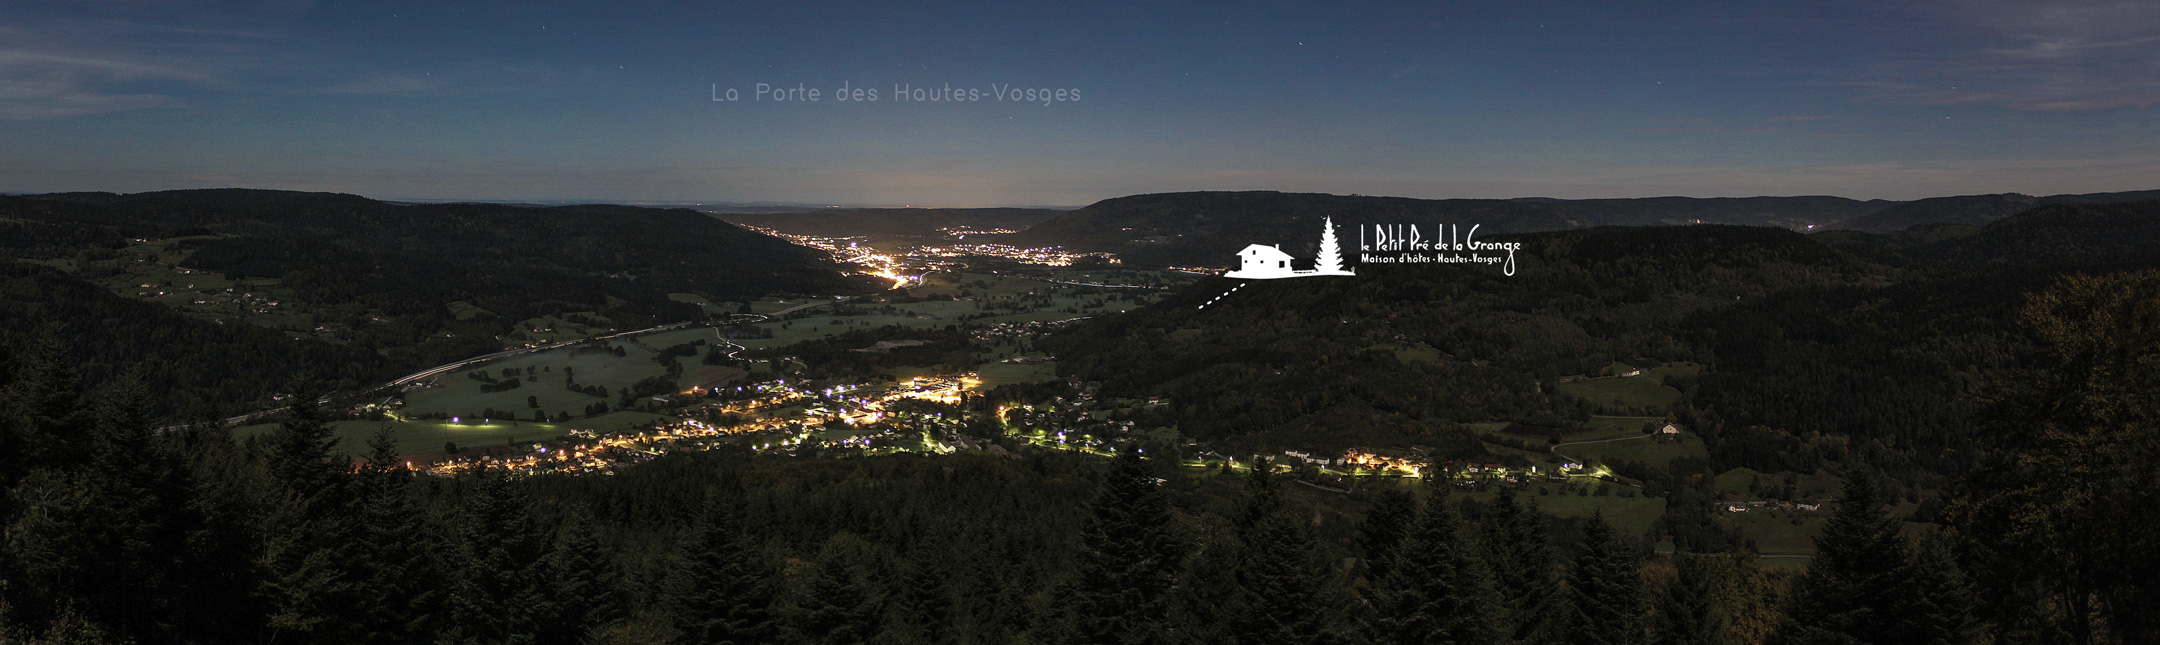 Nocturne au Tumulus de Vecoux (le village en contrebas) - Dans le fond, la ville de Remiremont, dite "la Porte des Hautes-Vosges"